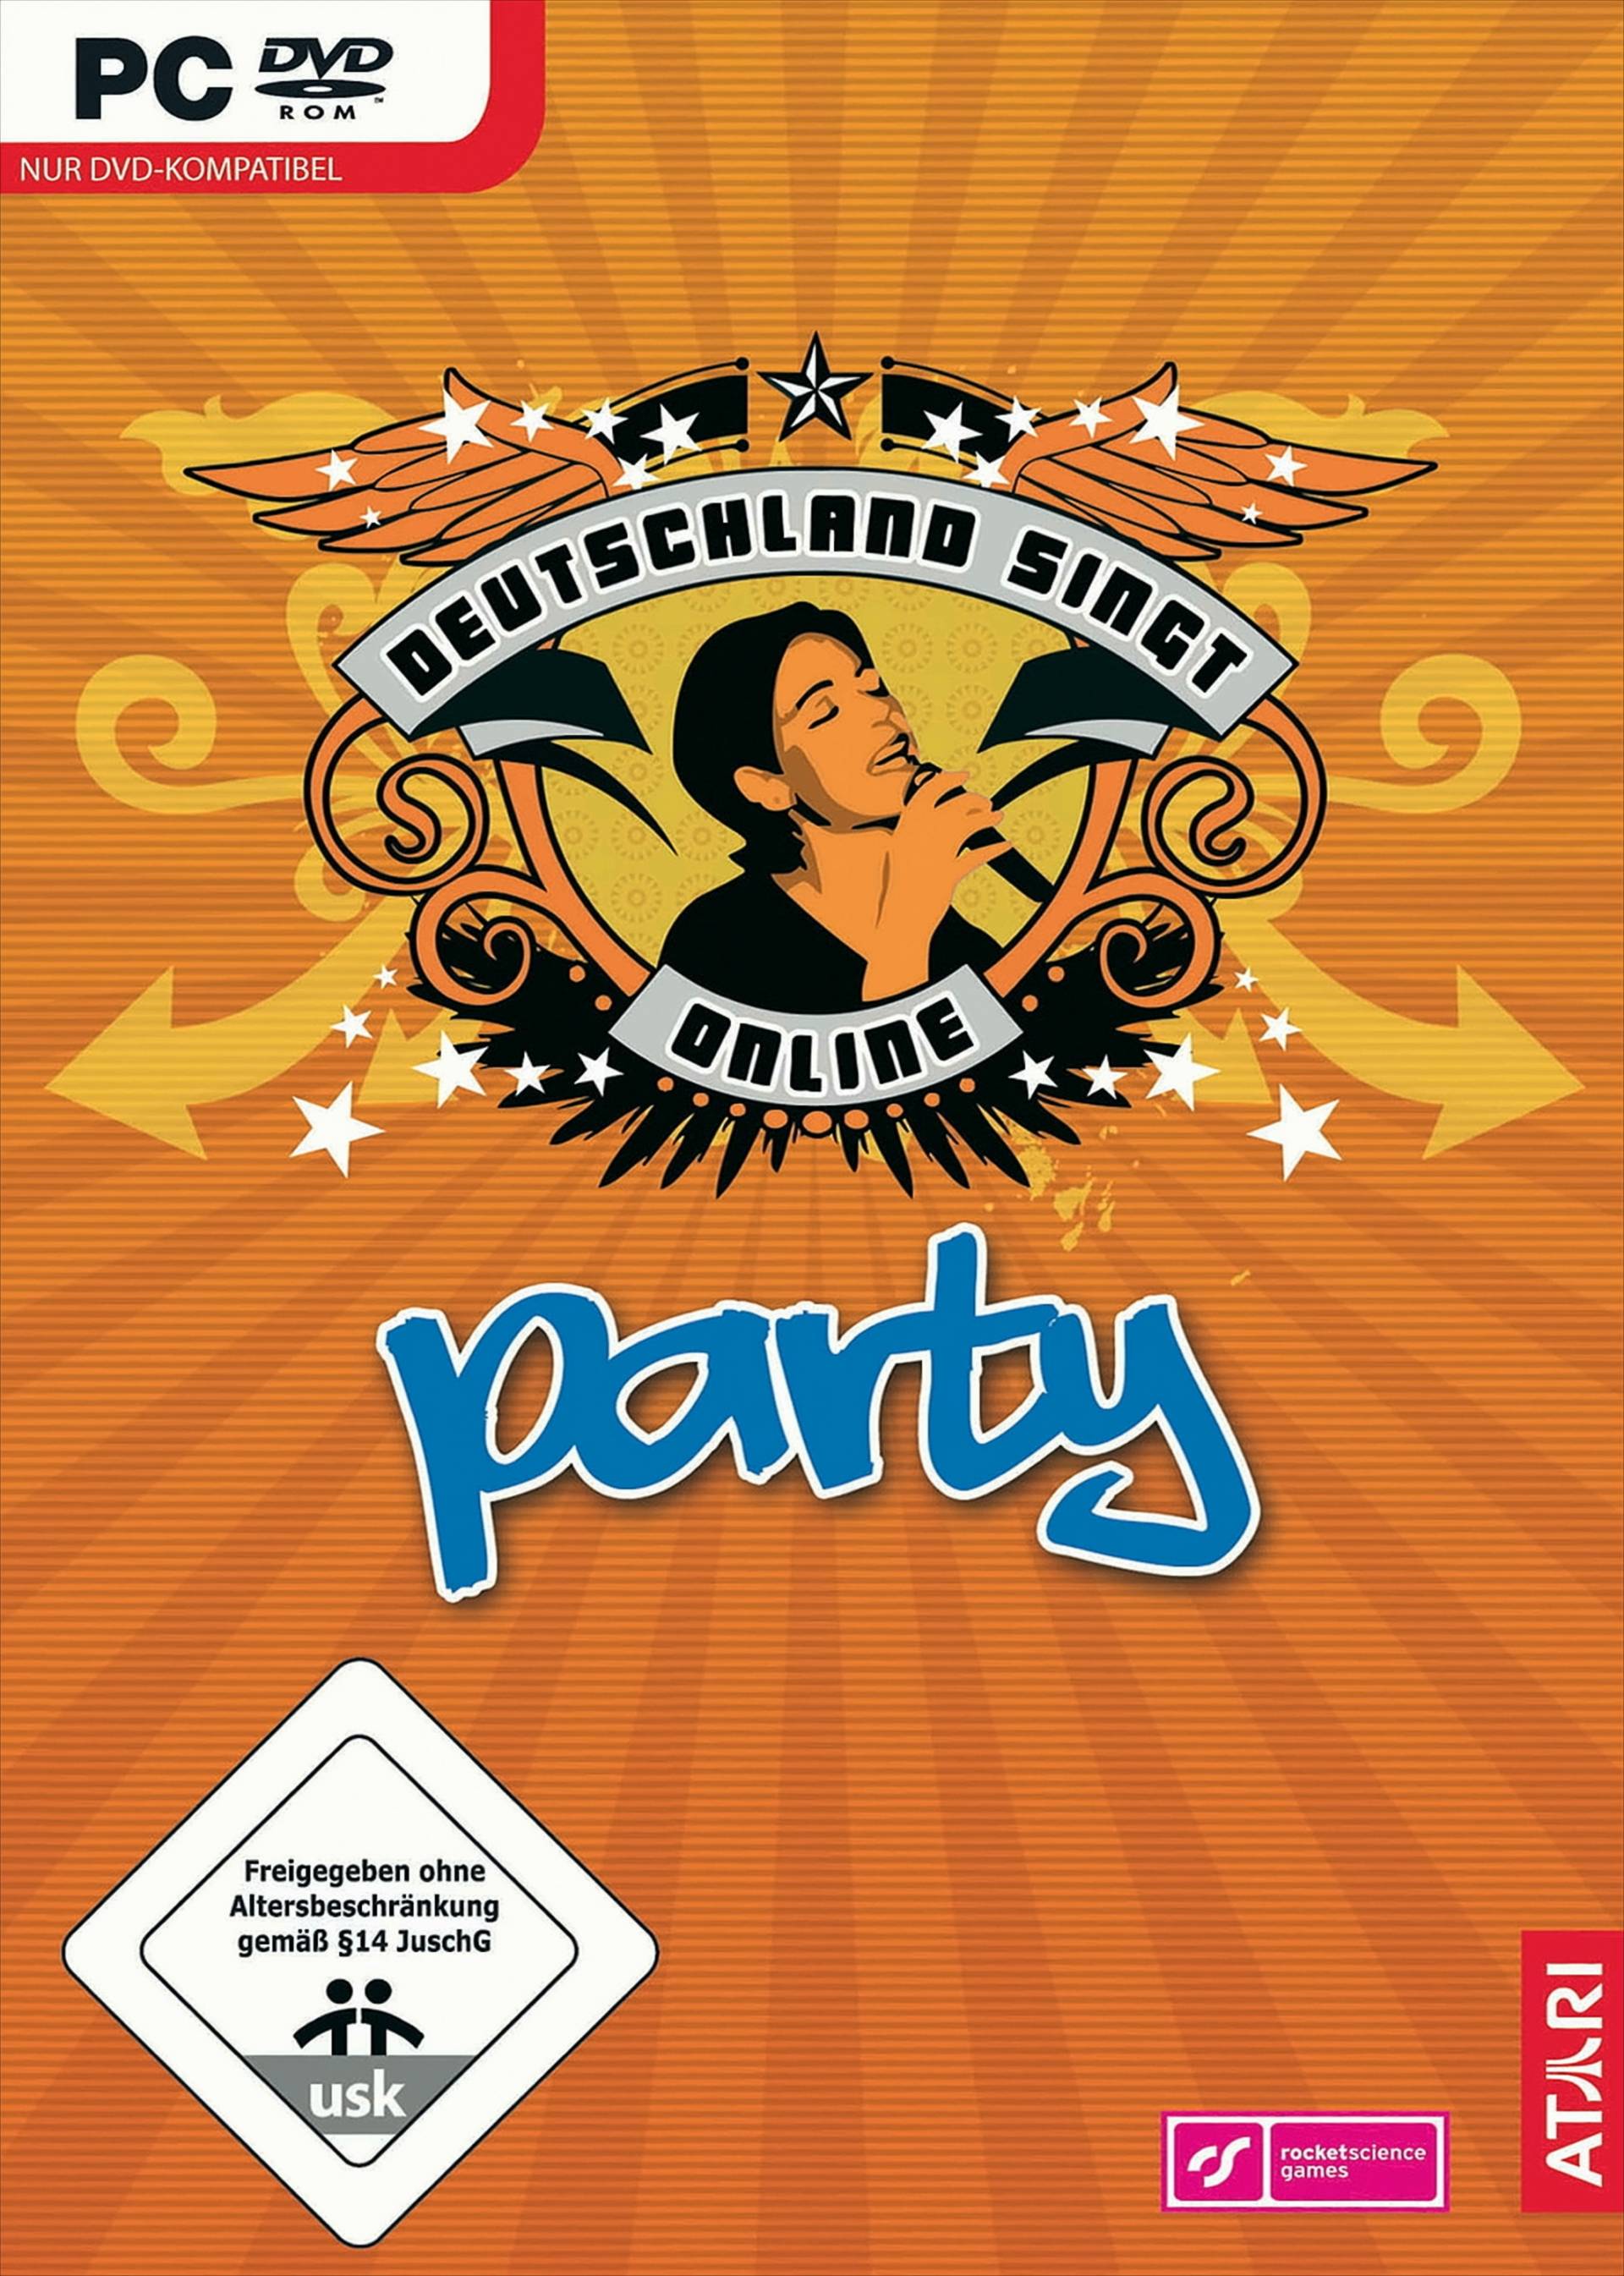 Deutschland singt Online: Party von Bandai Namco Entertainment